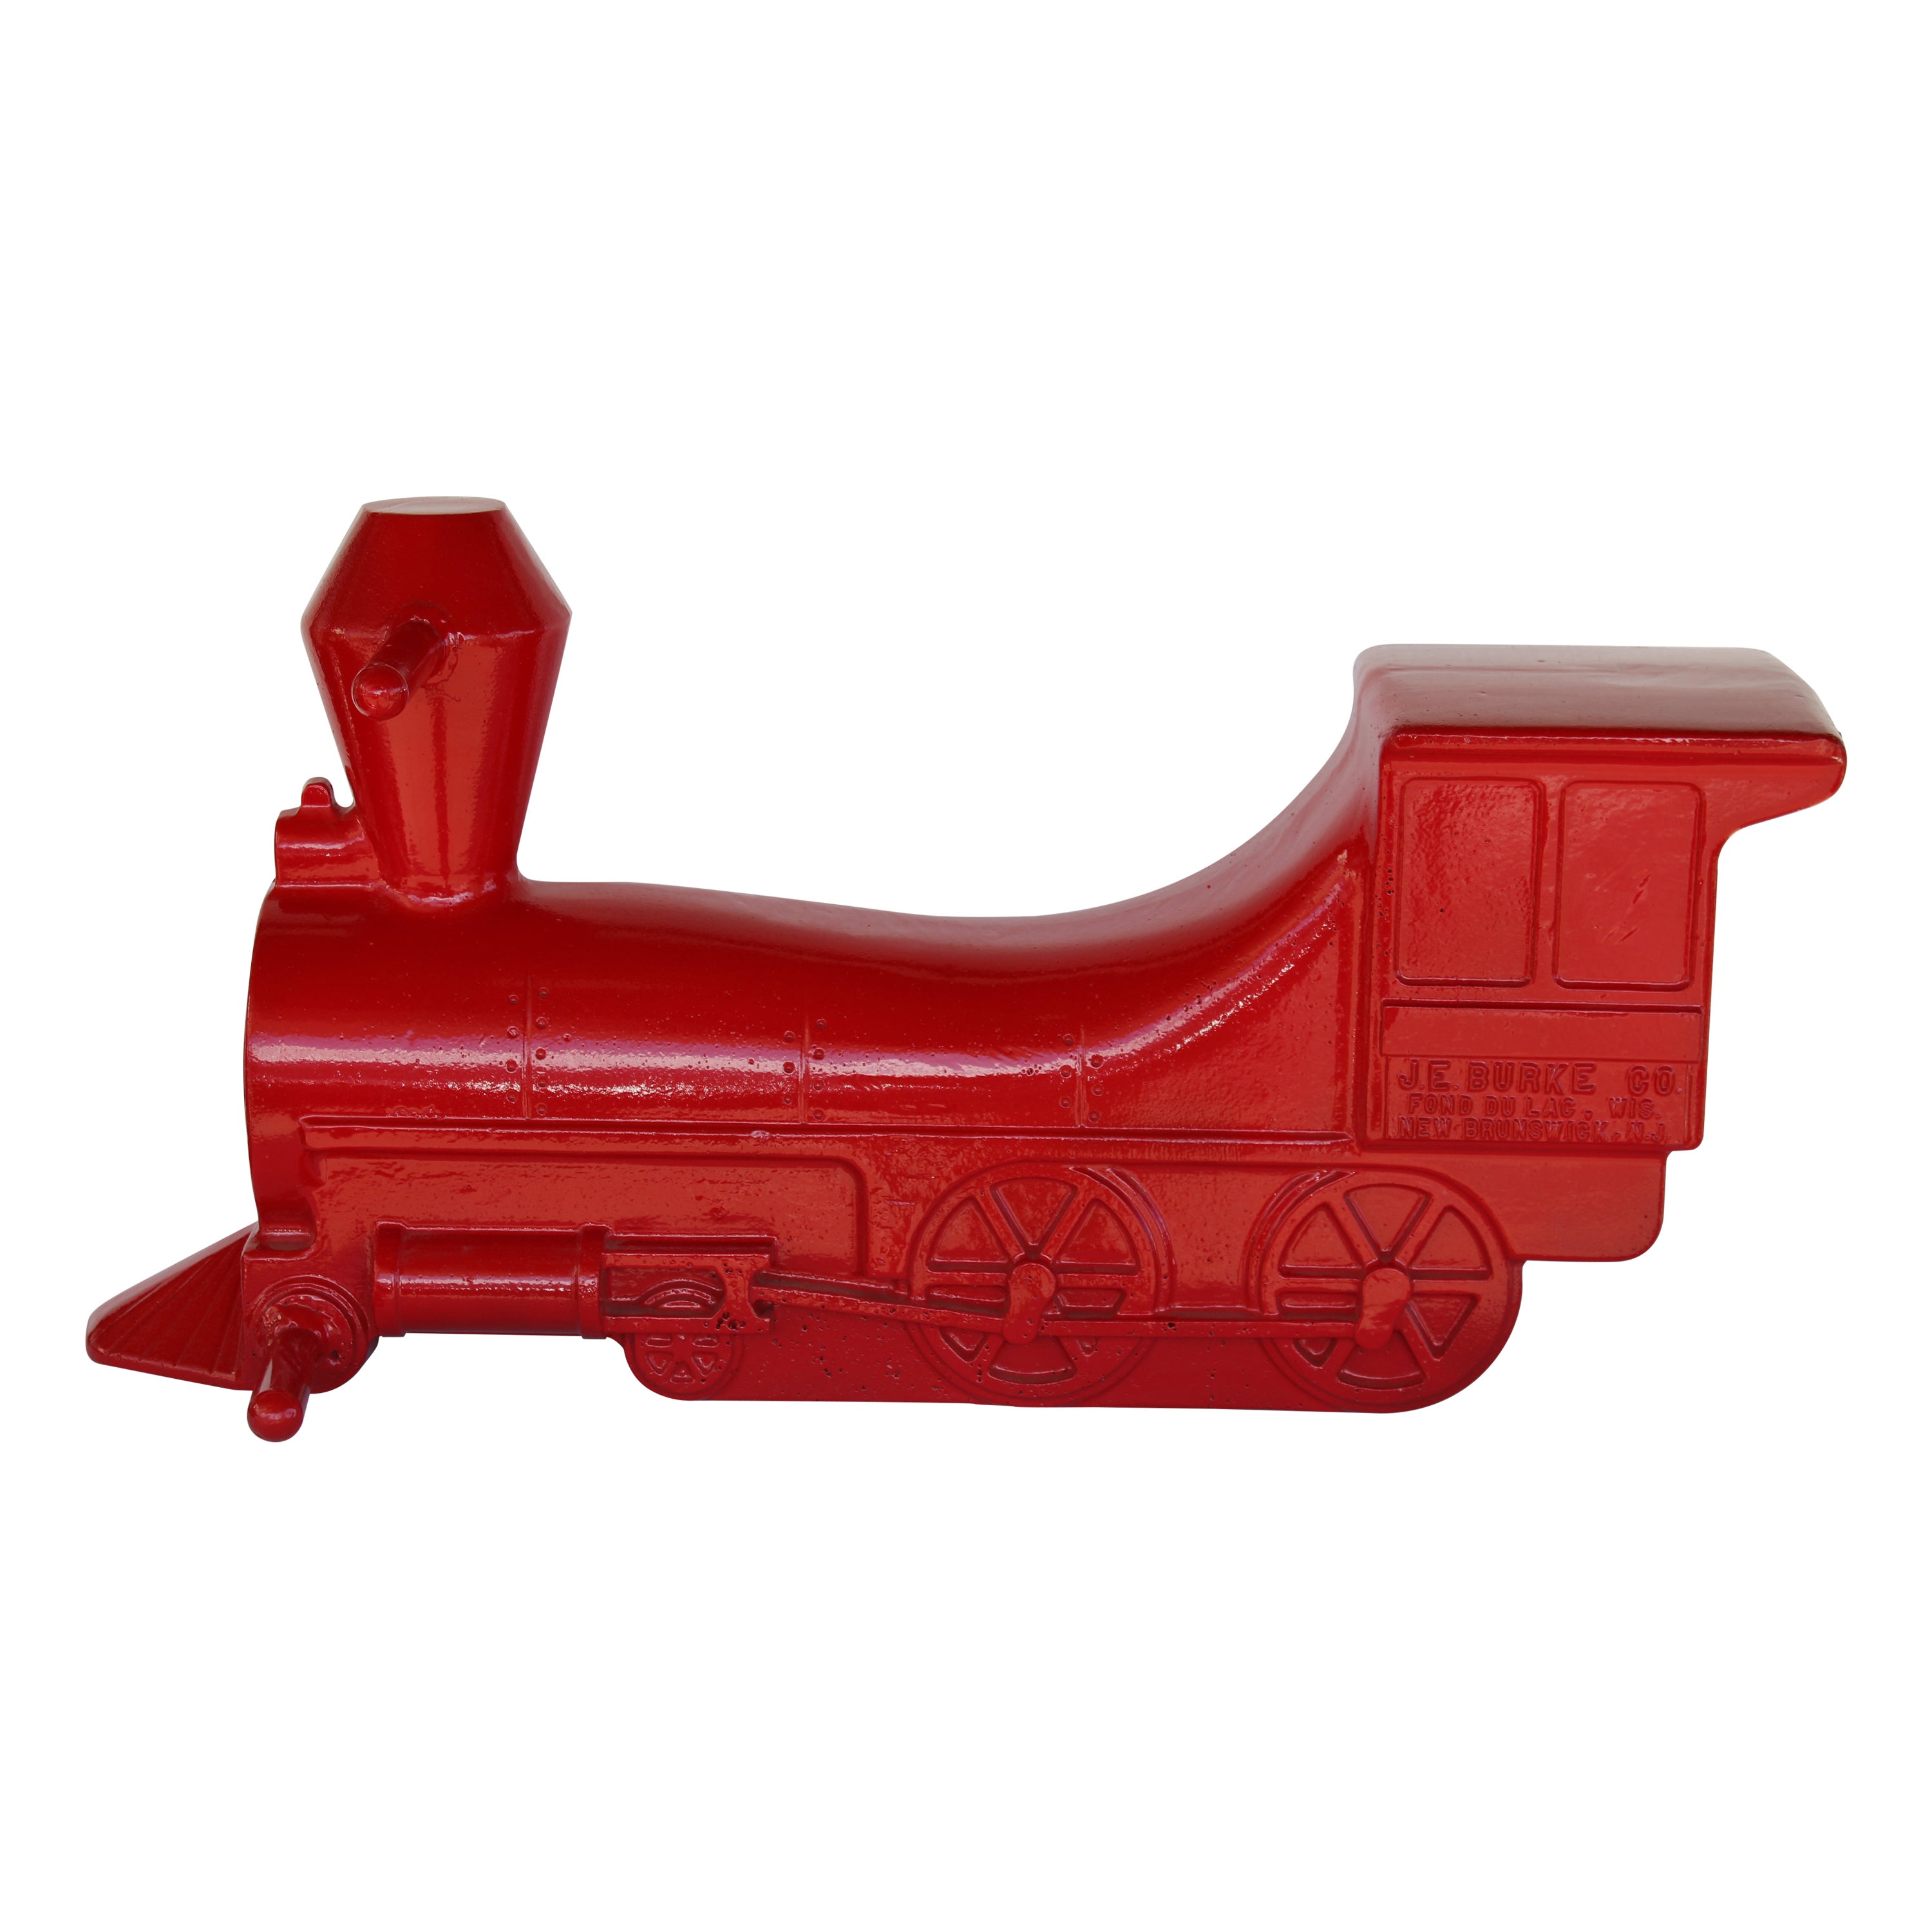 Aluminum Red Locomotive Playground Toy Sculpture